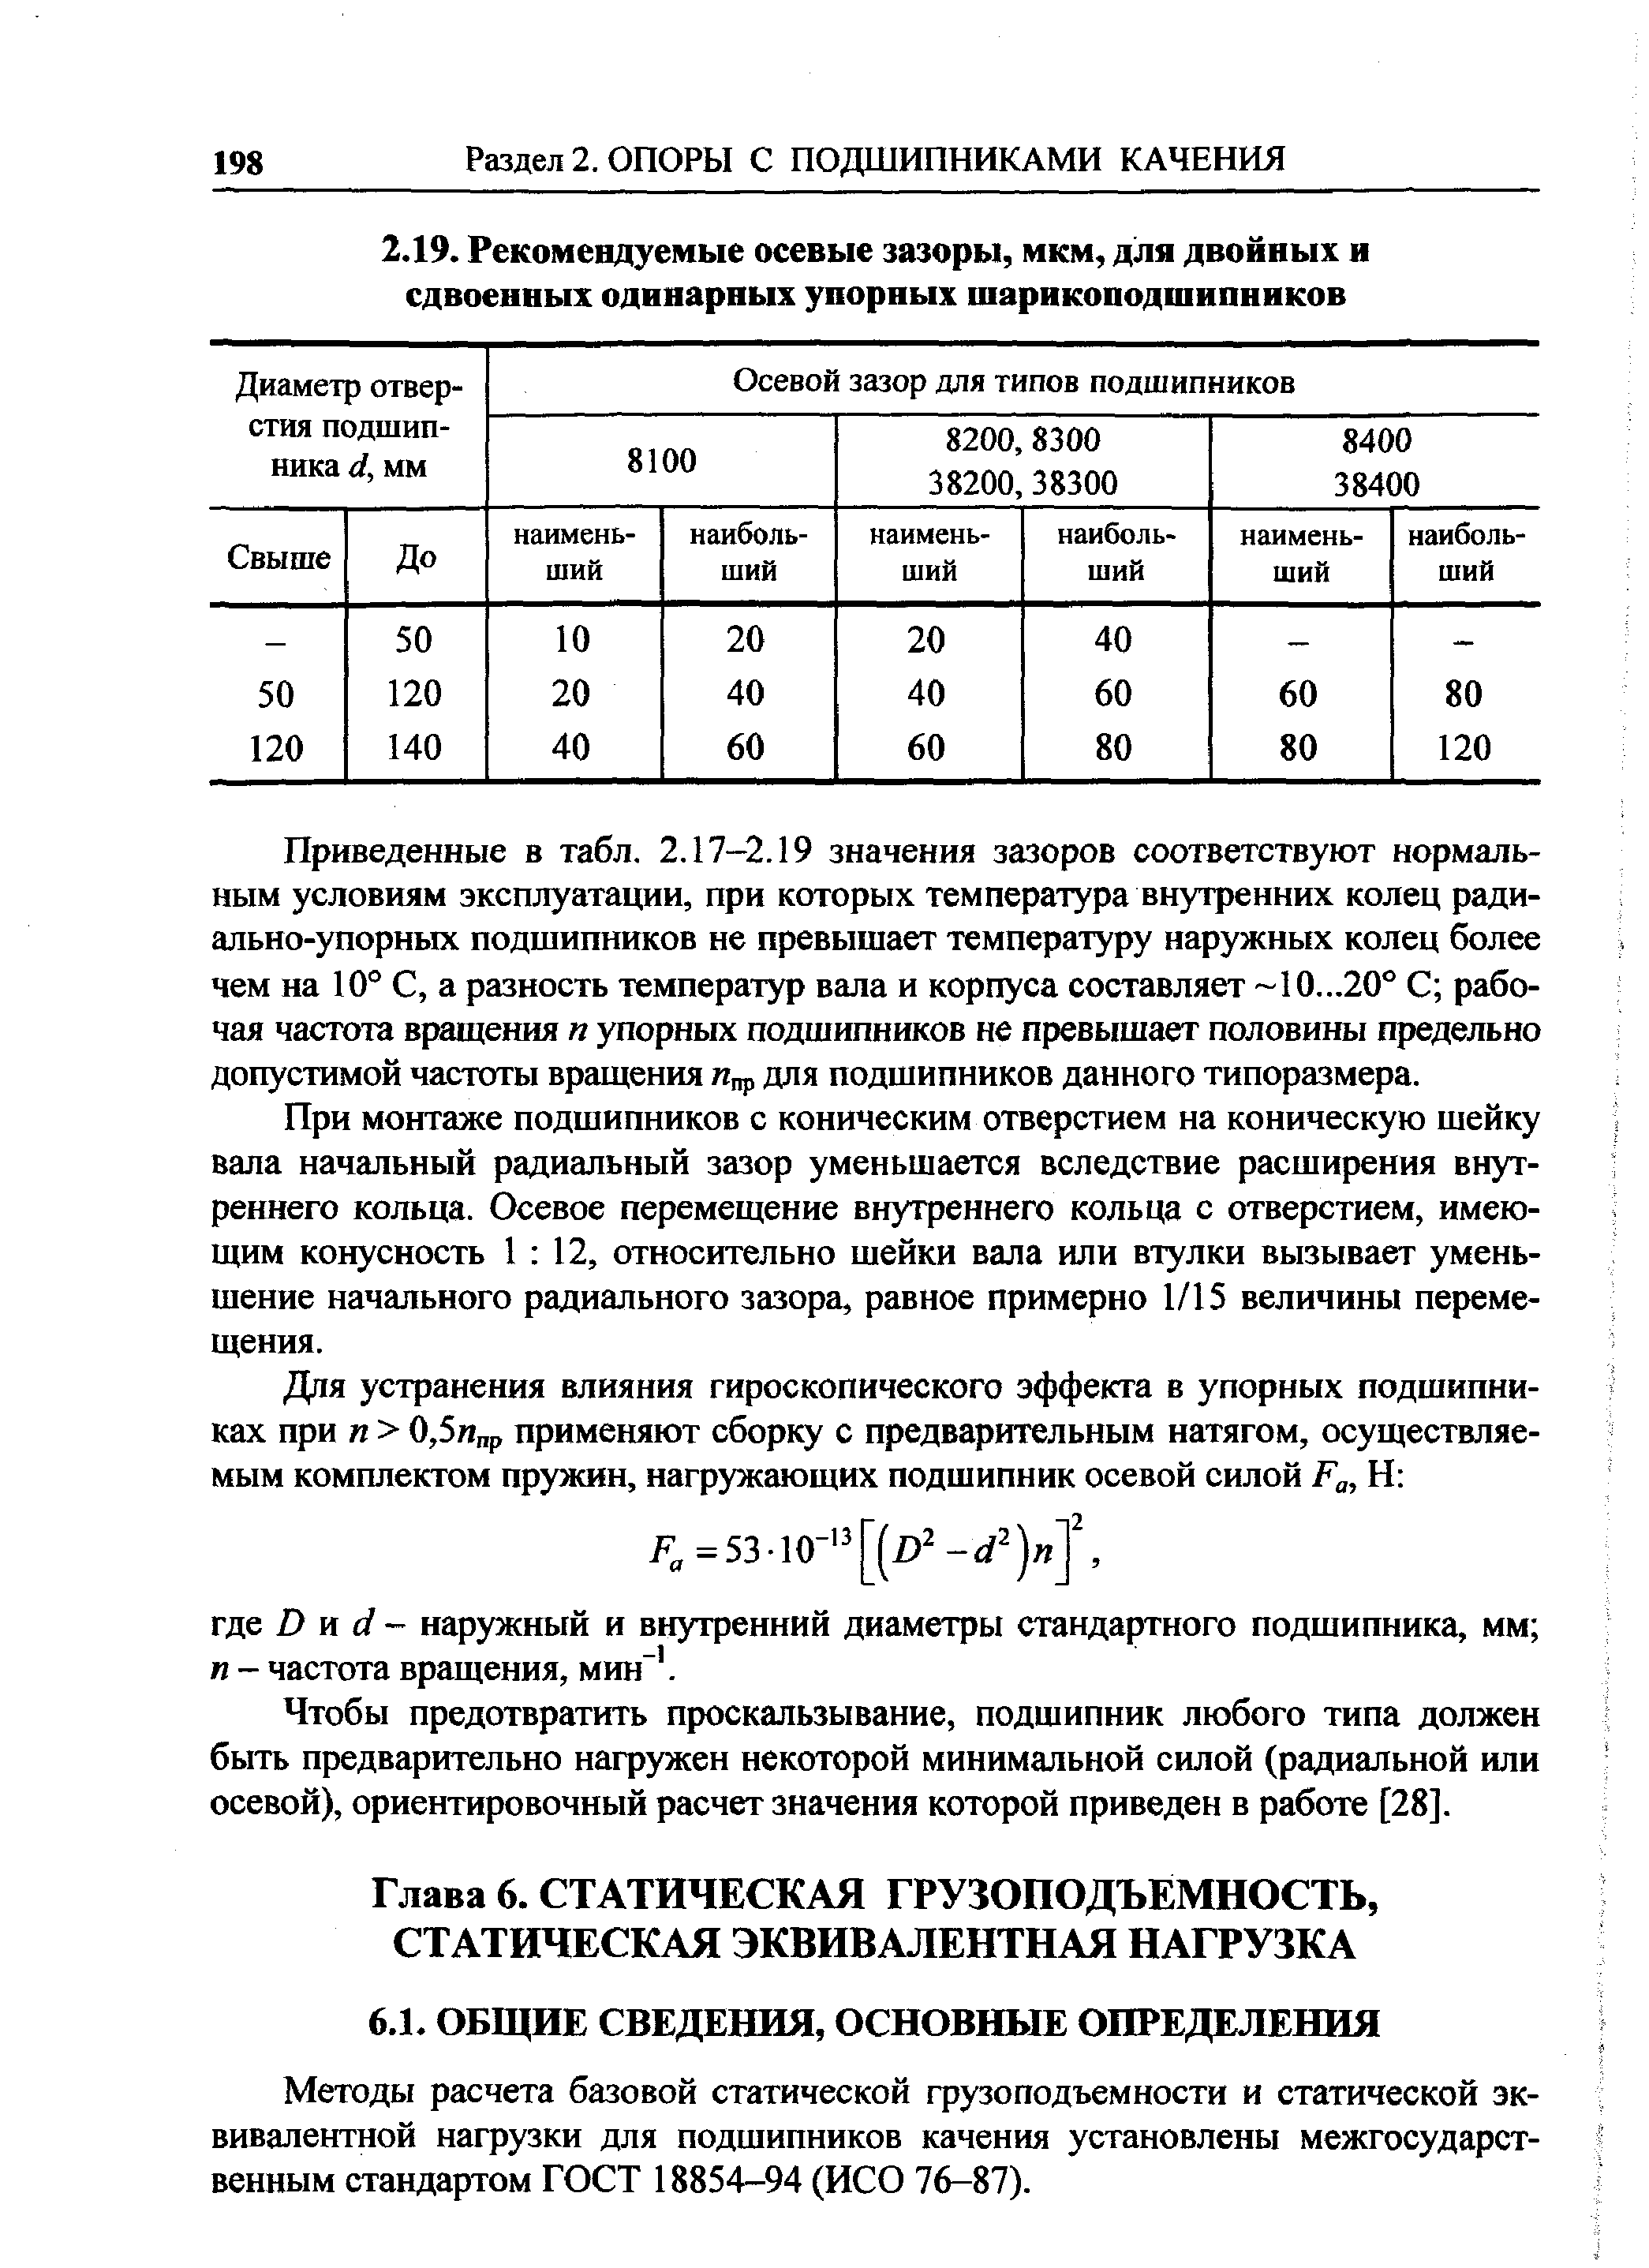 Методы расчета базовой статической грузоподъемности и статической эквивалентной нагрузки для подшипников качения установлены межгосударственным стандартом ГОСТ 18854-94 (ИСО 76-87).
